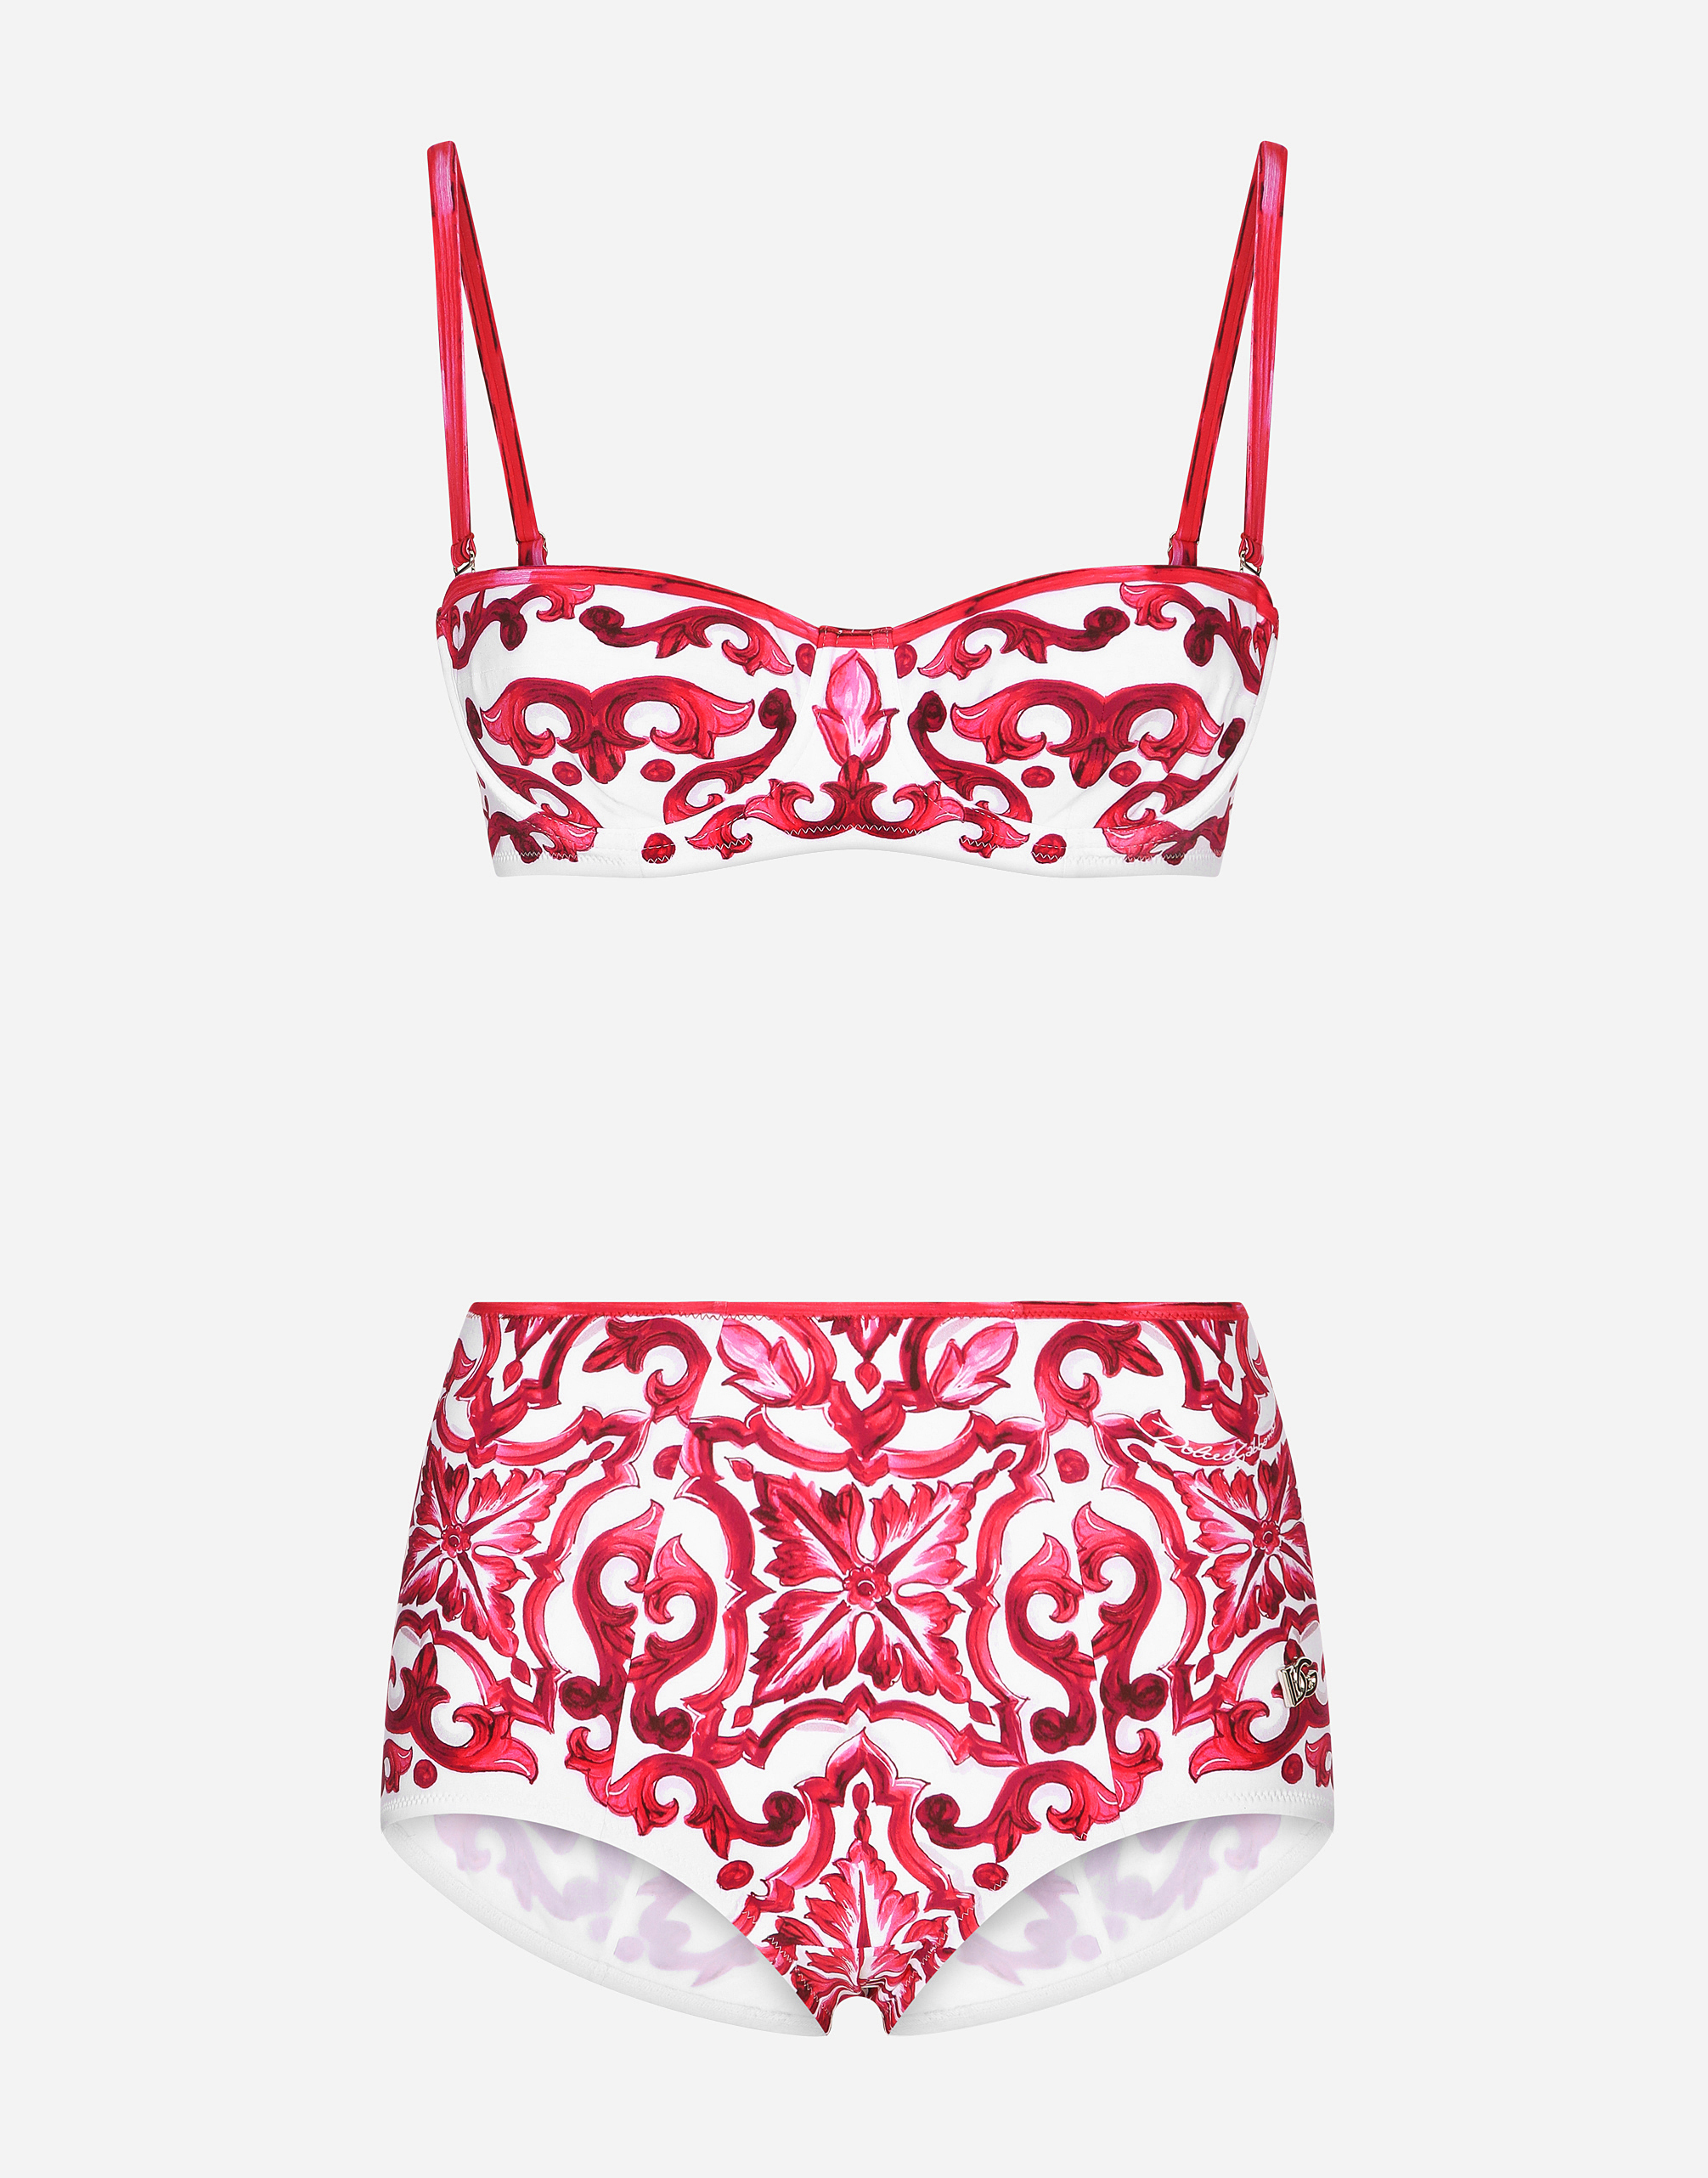 Dolce & Gabbana Majolica Print Balconette Bikini Top And Bottoms In Tris_maioliche_fuxia